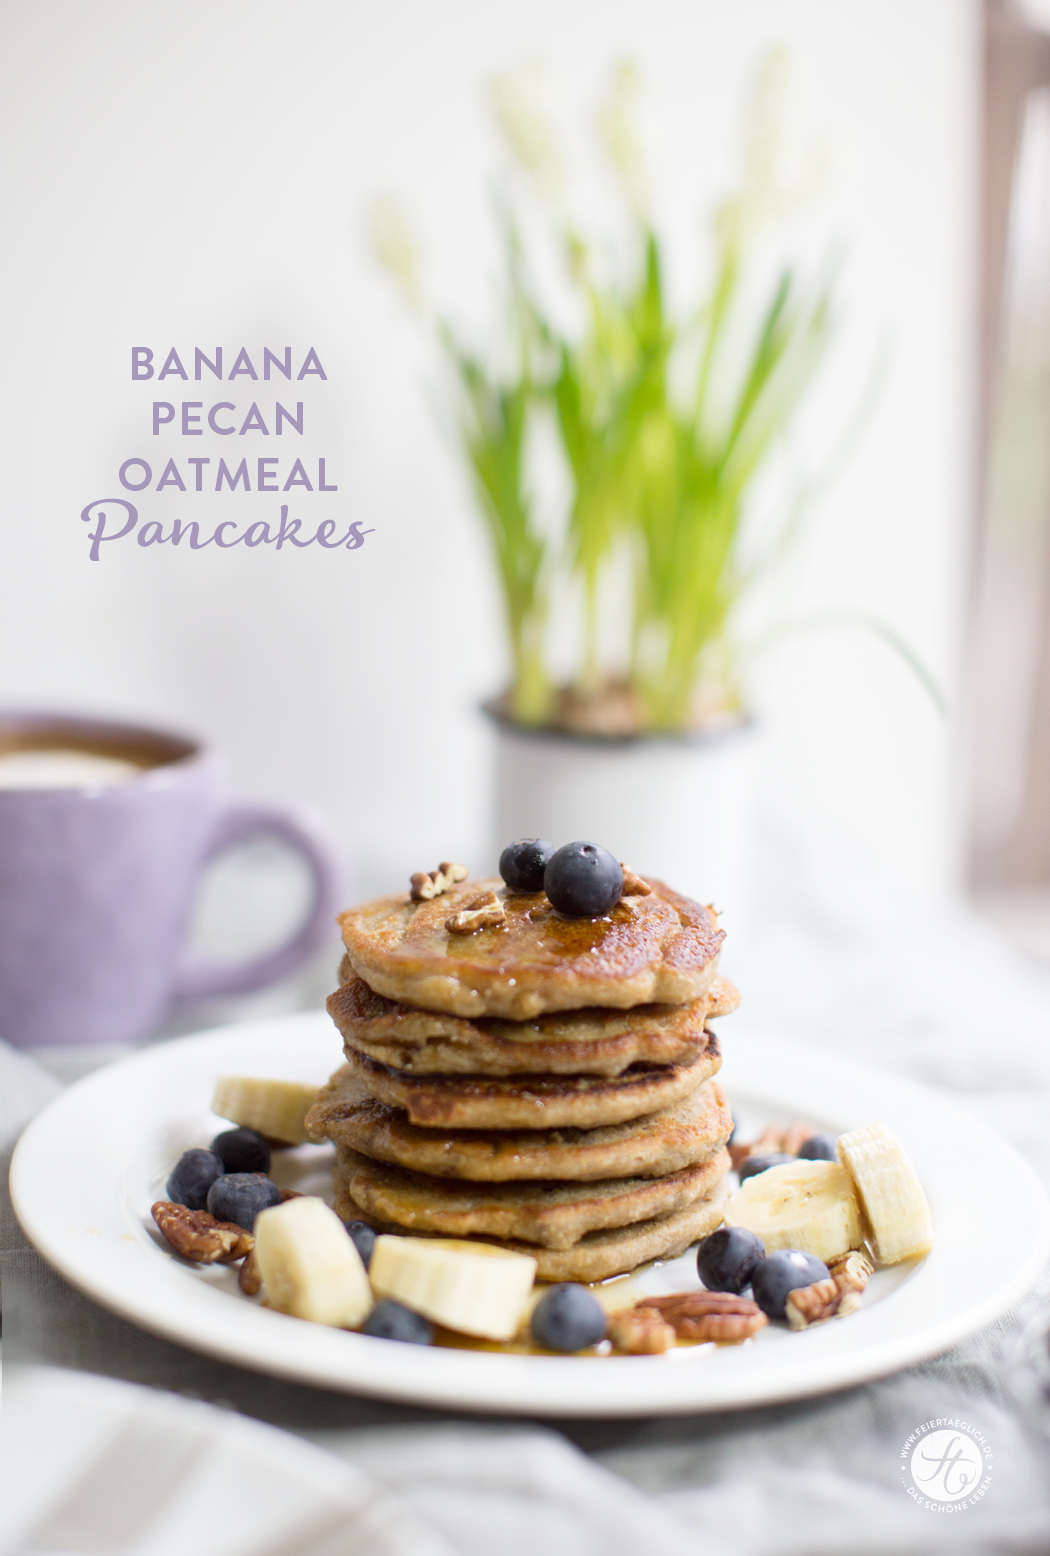 Banana-Oatmeal Pancakes mit Pekannüssen und Blaubeere, vegan und glutenfrei | Rezept von feiertäglich.de